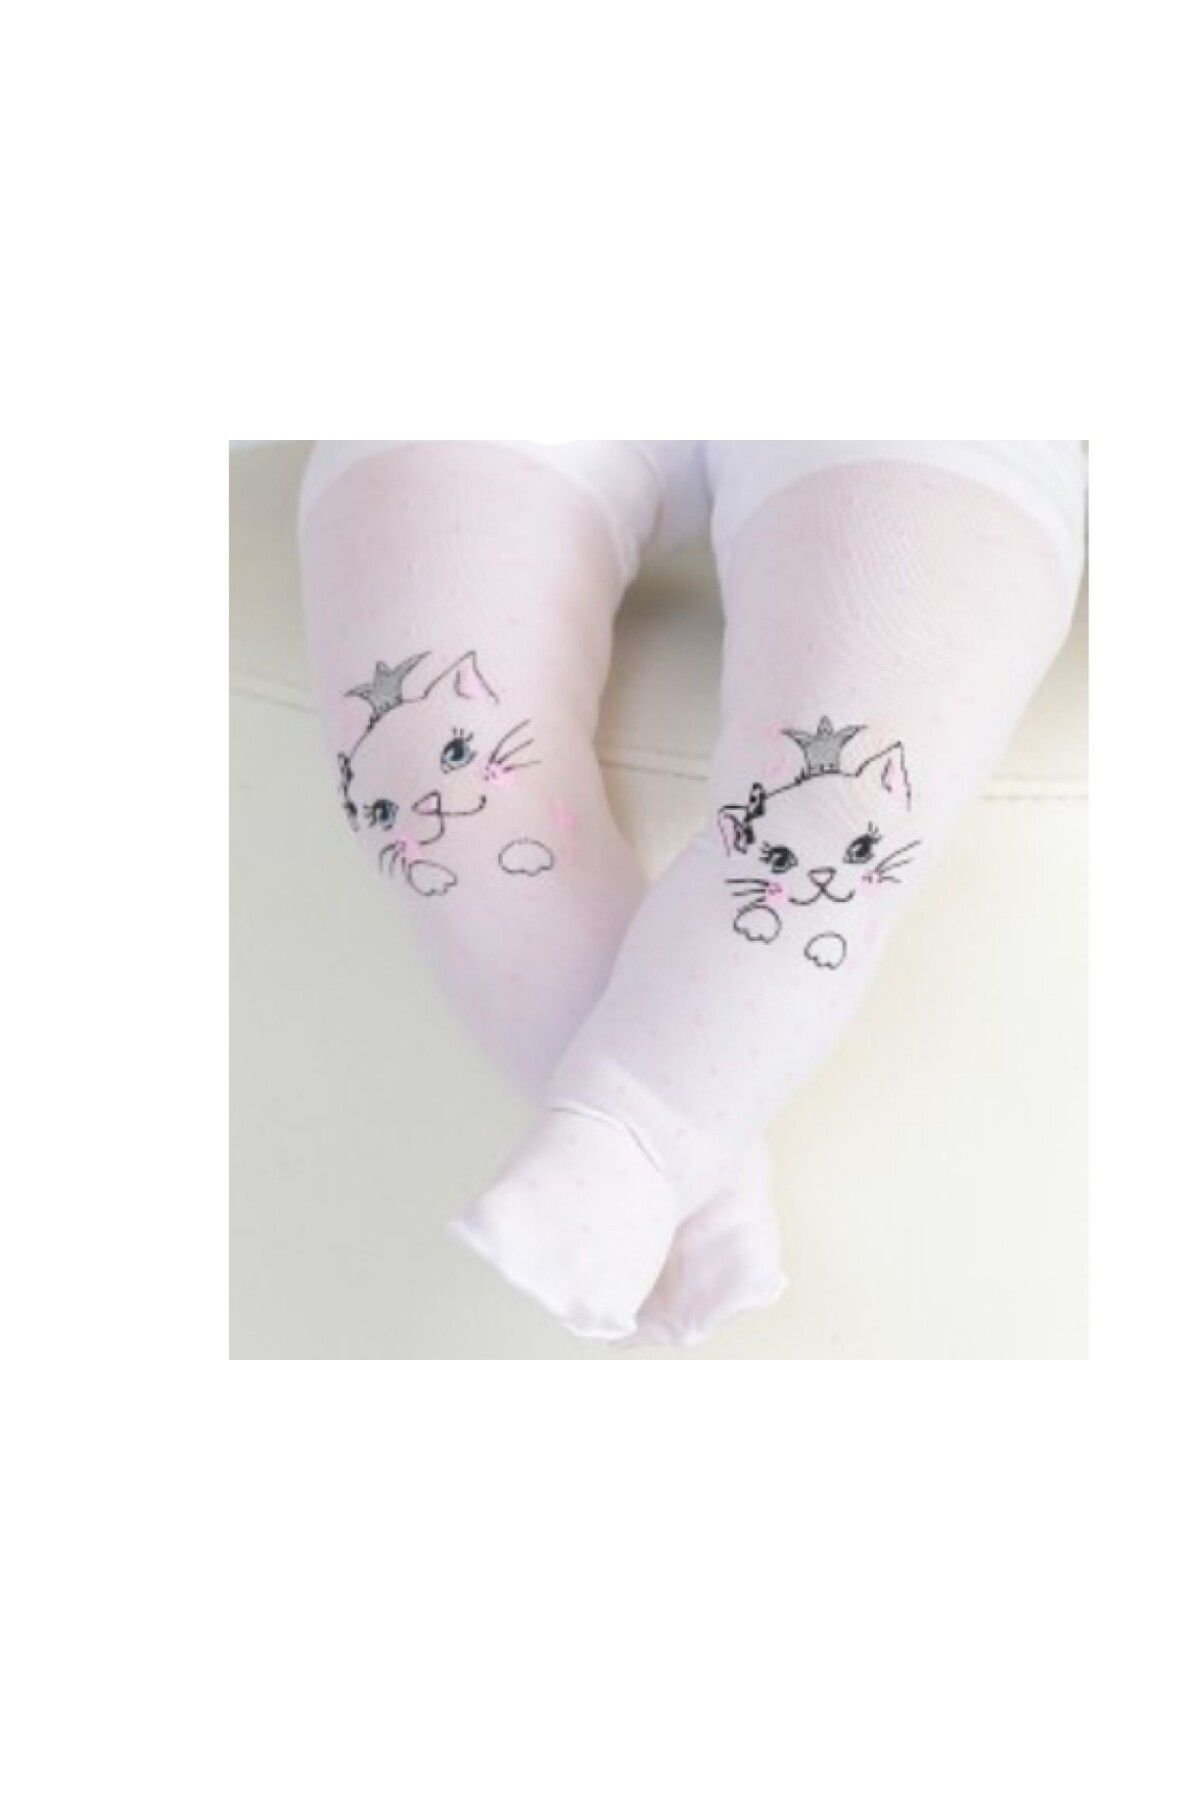 Daymod Bebek Beyaz Kedili Desenli Mus Külotlu Çorap Minik